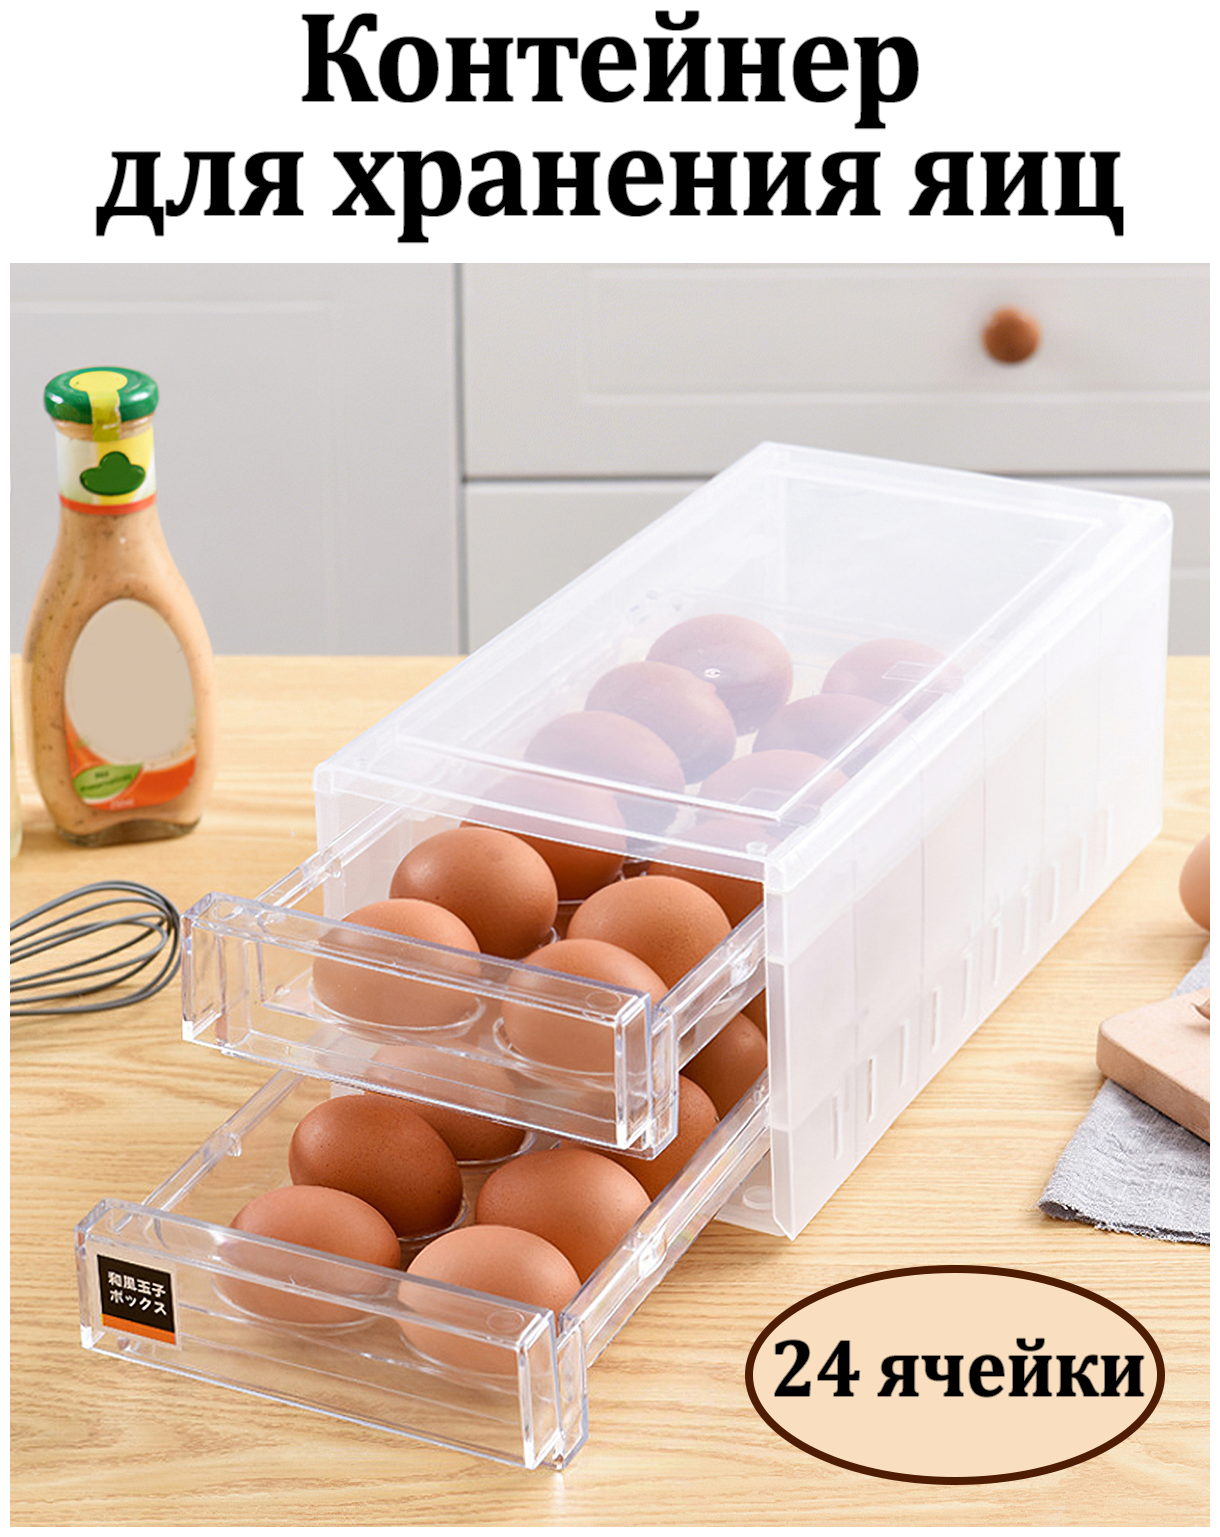 Контейнер для яиц 24 ячейки/ Контейнер пластиковый для хранения яиц/ Емкость для хранения